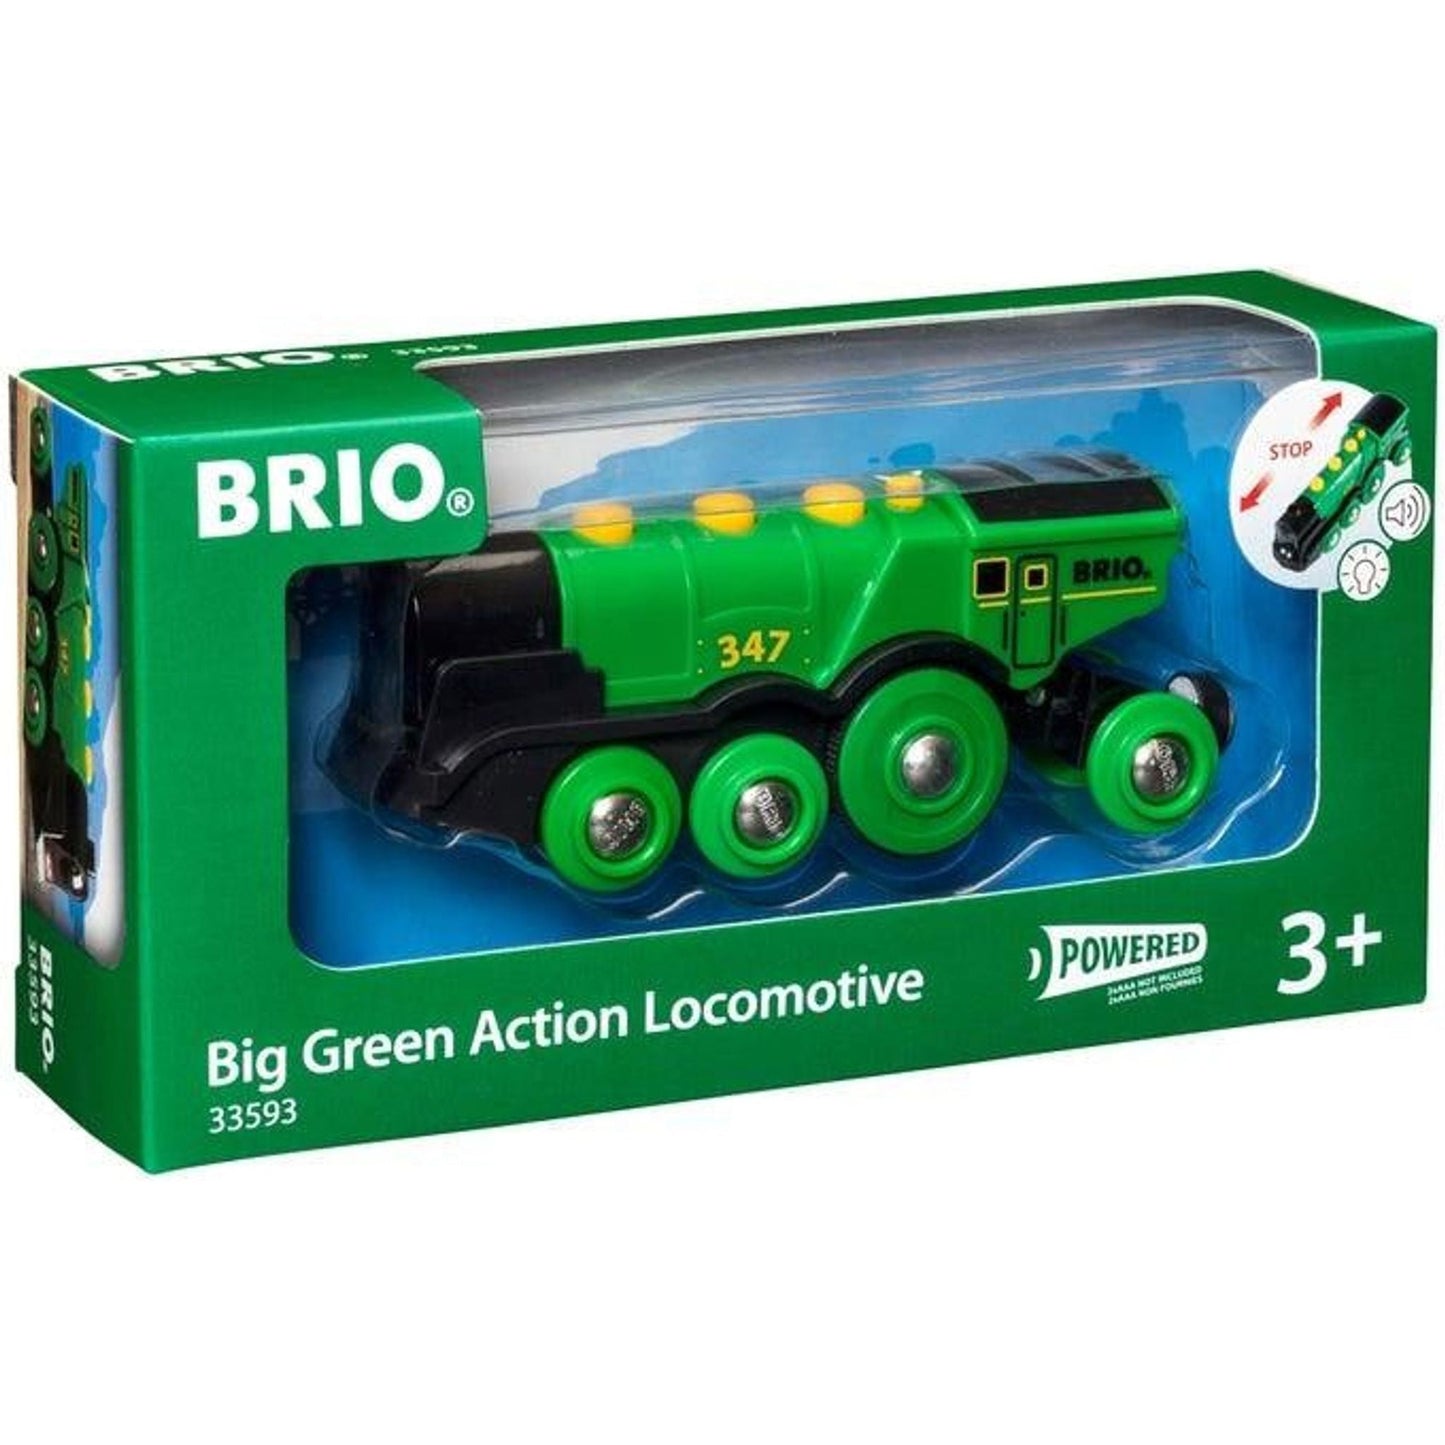 BRIO BO - Big Green Action Locomotive - Toybox Tales